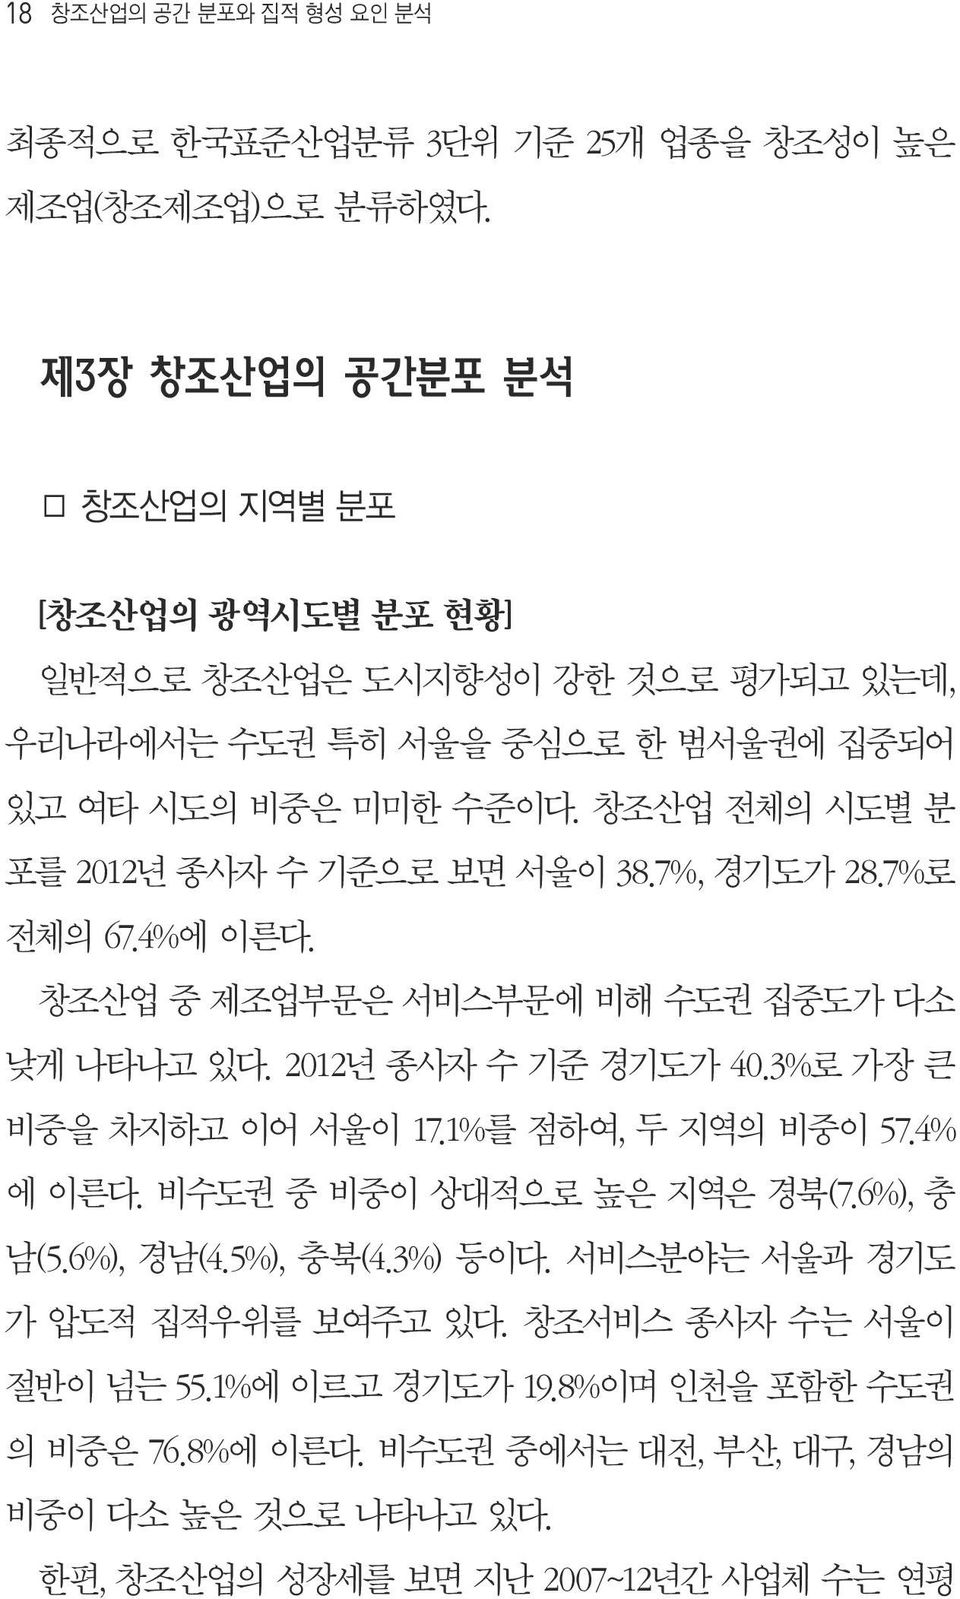 창조산업 전체의 시도별 분 포를 2012년 종사자 수 기준으로 보면 서울이 38.7%, 경기도가 28.7%로 전체의 67.4%에 이른다. 창조산업 중 제조업부문은 서비스부문에 비해 수도권 집중도가 다소 낮게 나타나고 있다. 2012년 종사자 수 기준 경기도가 40.3%로 가장 큰 비중을 차지하고 이어 서울이 17.